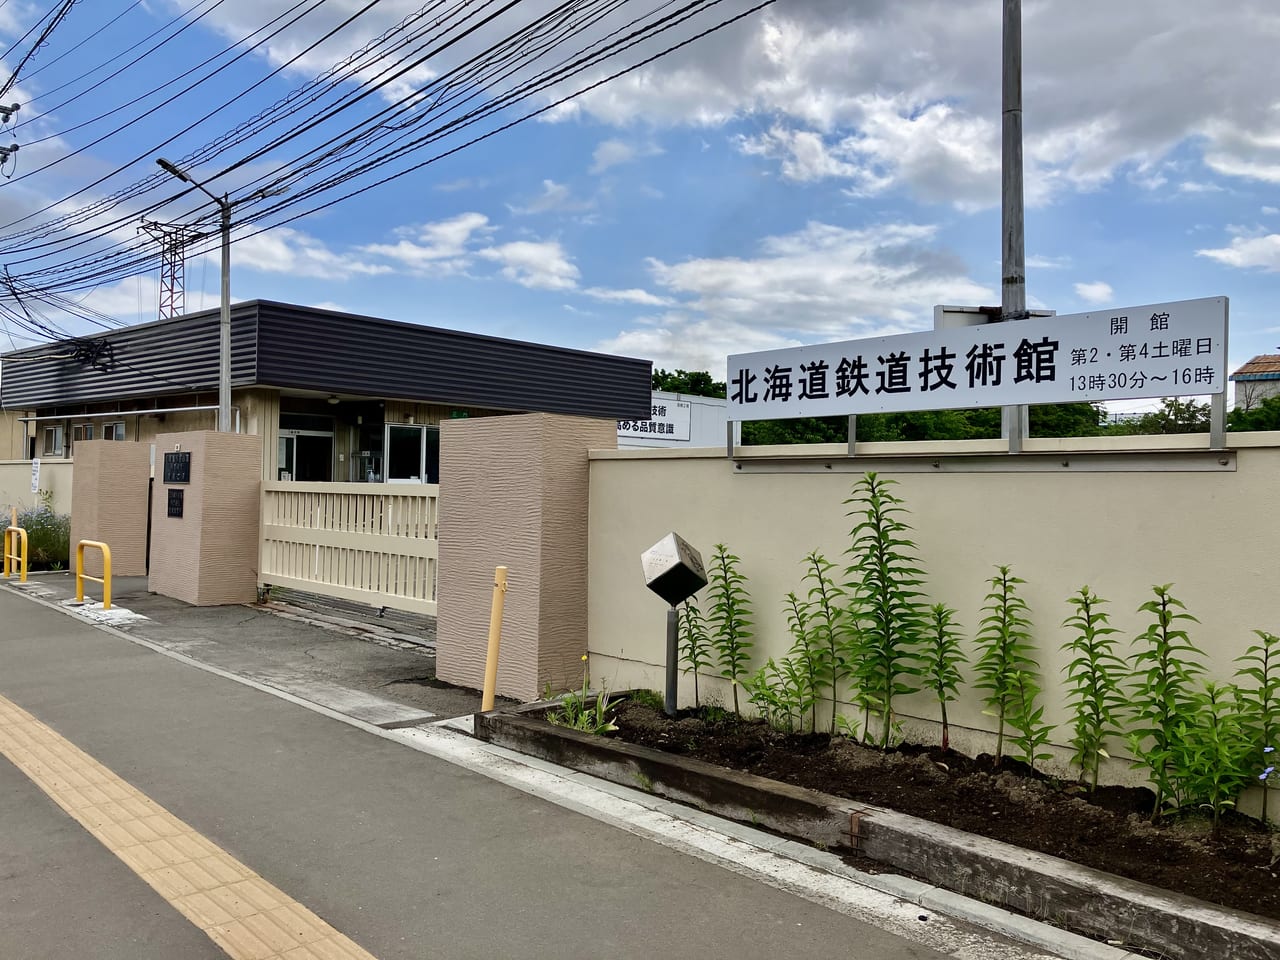 鉄道ファンのみなさん、お待たせしました。日本を代表する鉄道工場のひとつ「JR苗穂工場」が一般公開されますよ